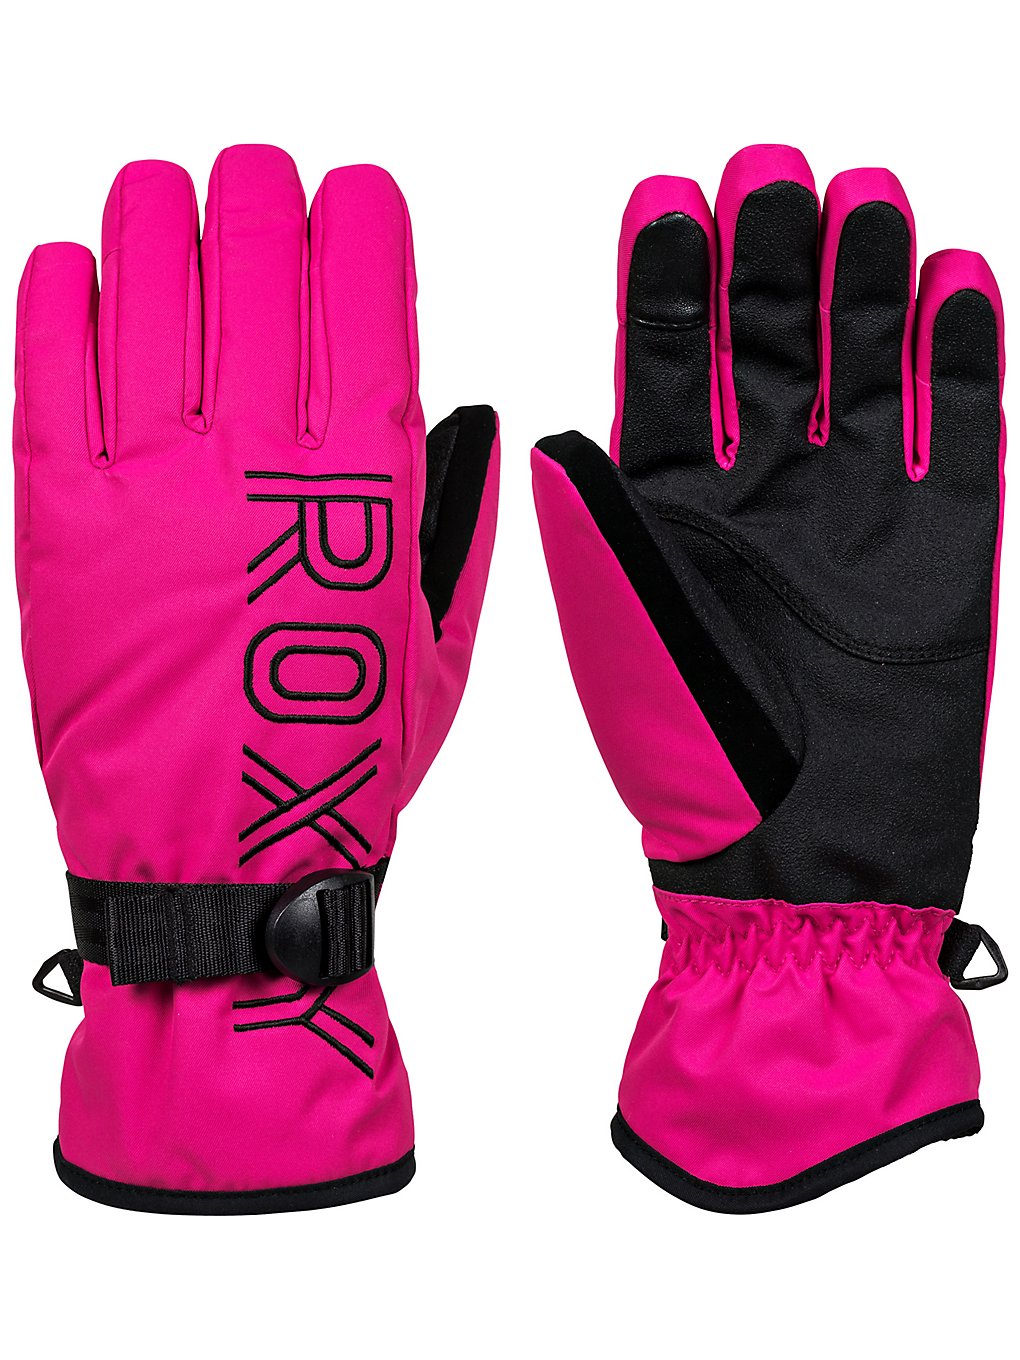 Roxy freshfield gloves pinkki, roxy